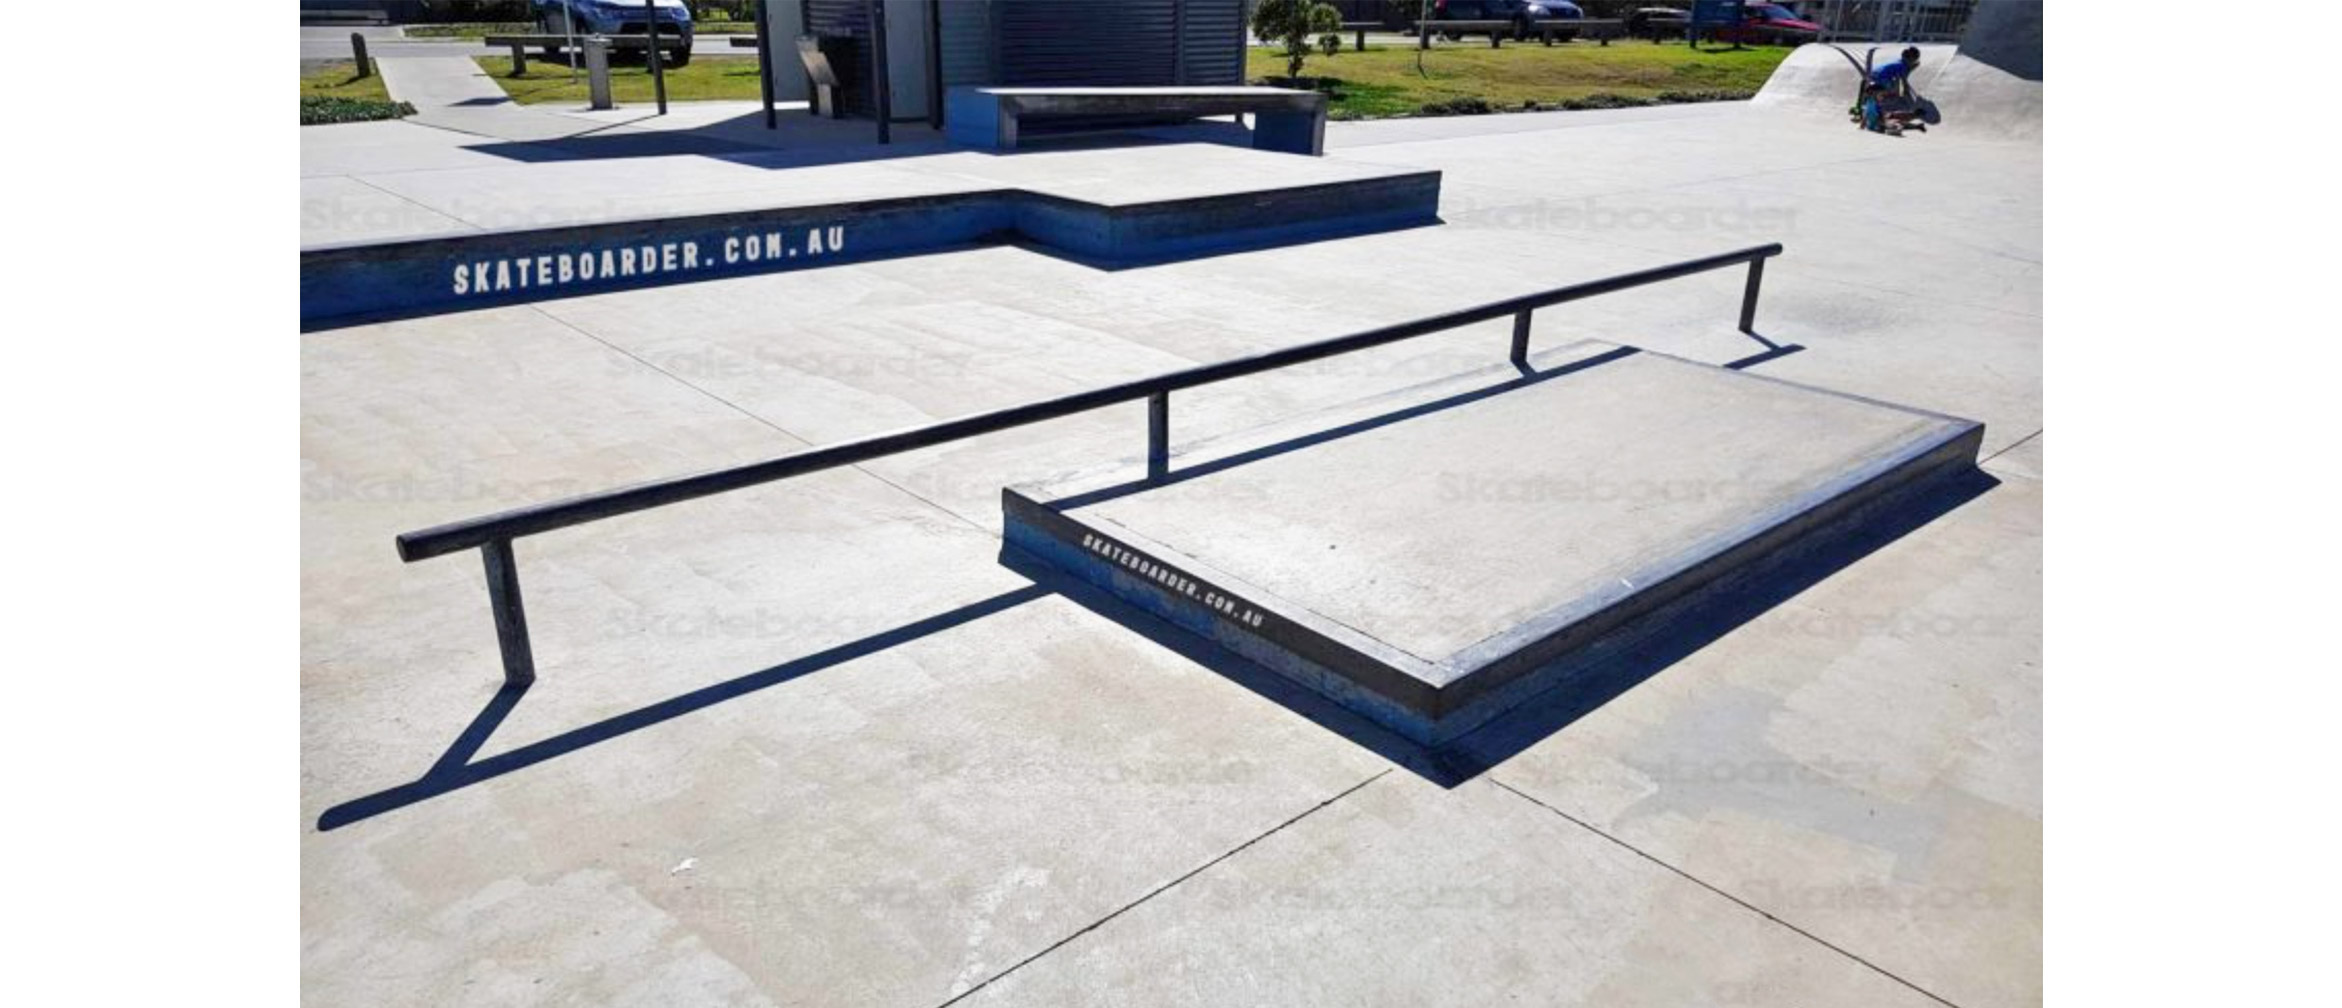 Tugun skate park manual pad & rail